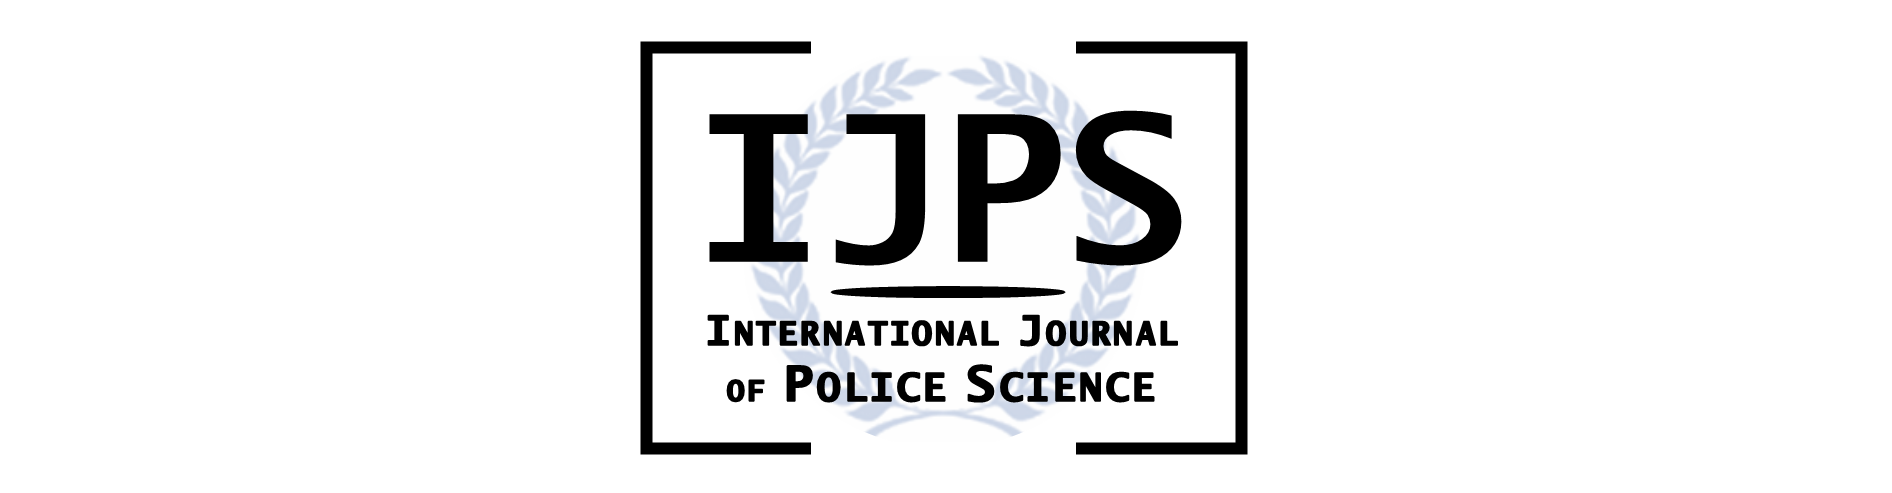 Blue laurel wreath behind words IJPS International Journal of Police Science